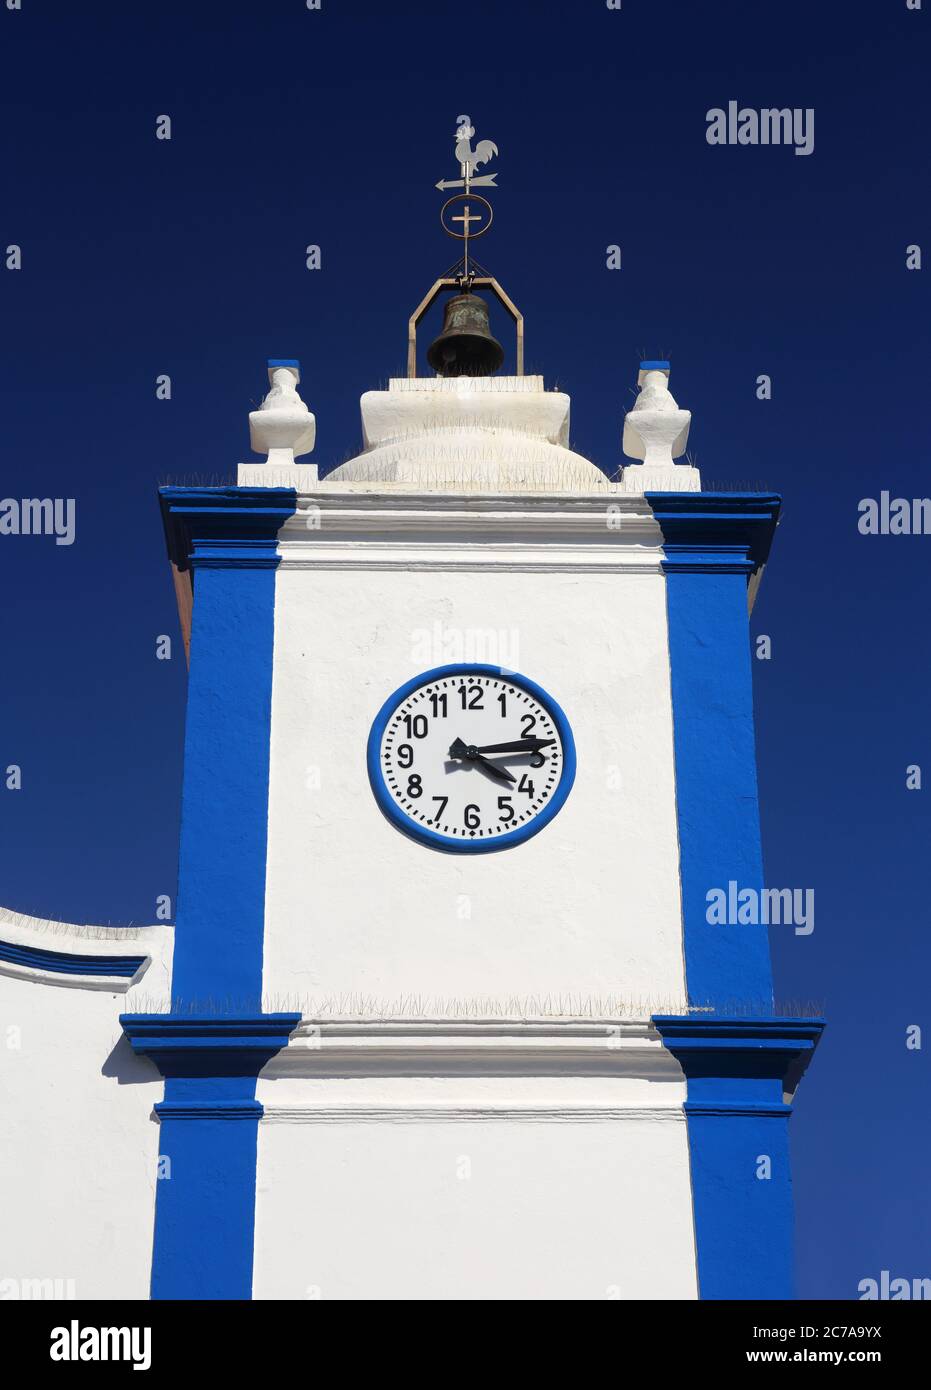 Portugal, Sines, Vila Nova de Milfontes. Unsere Dame der Gnade Kirche. Detail der weiß gewaschenen und blauen Fassade und Glockenturm gegen einen klaren blauen Himmel. Stockfoto